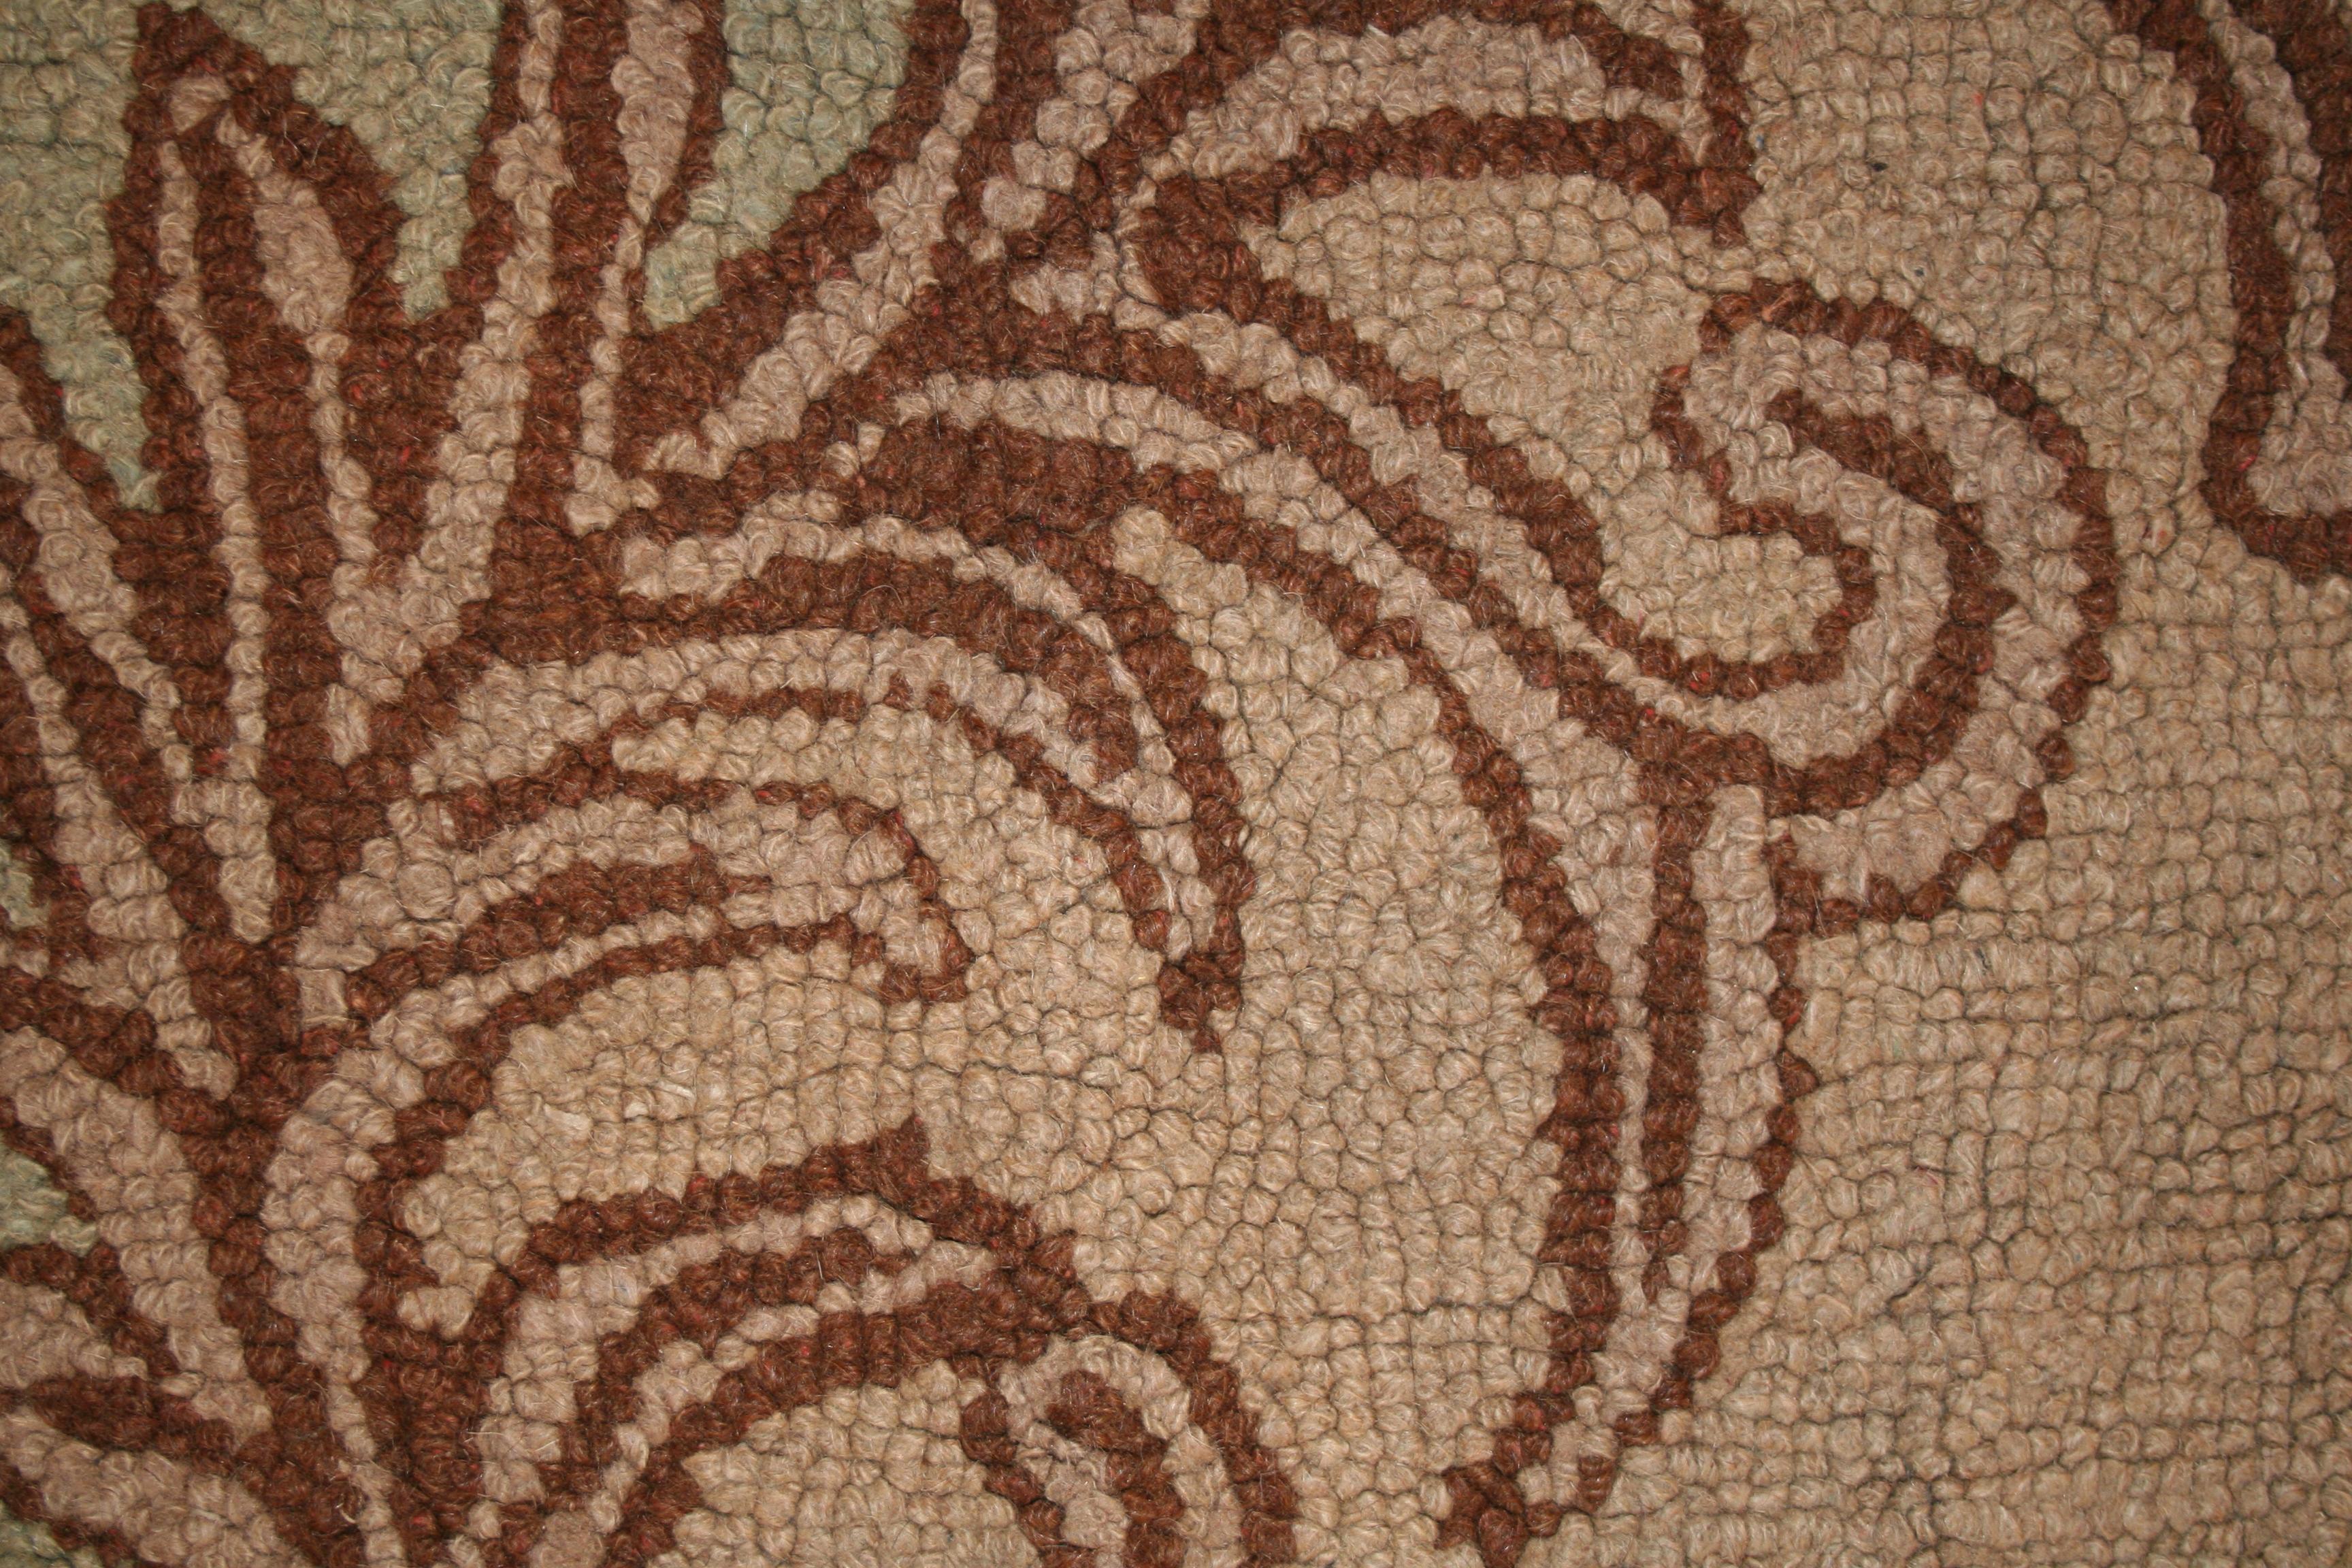 Suite à la mode des tapis français d'Aubusson et de la Savonnerie aux États-Unis au début du siècle précédent, des ateliers ont été chargés de tisser des tapis crochetés dans ce style. Cet exemple suit ce style de manière assez précise et se